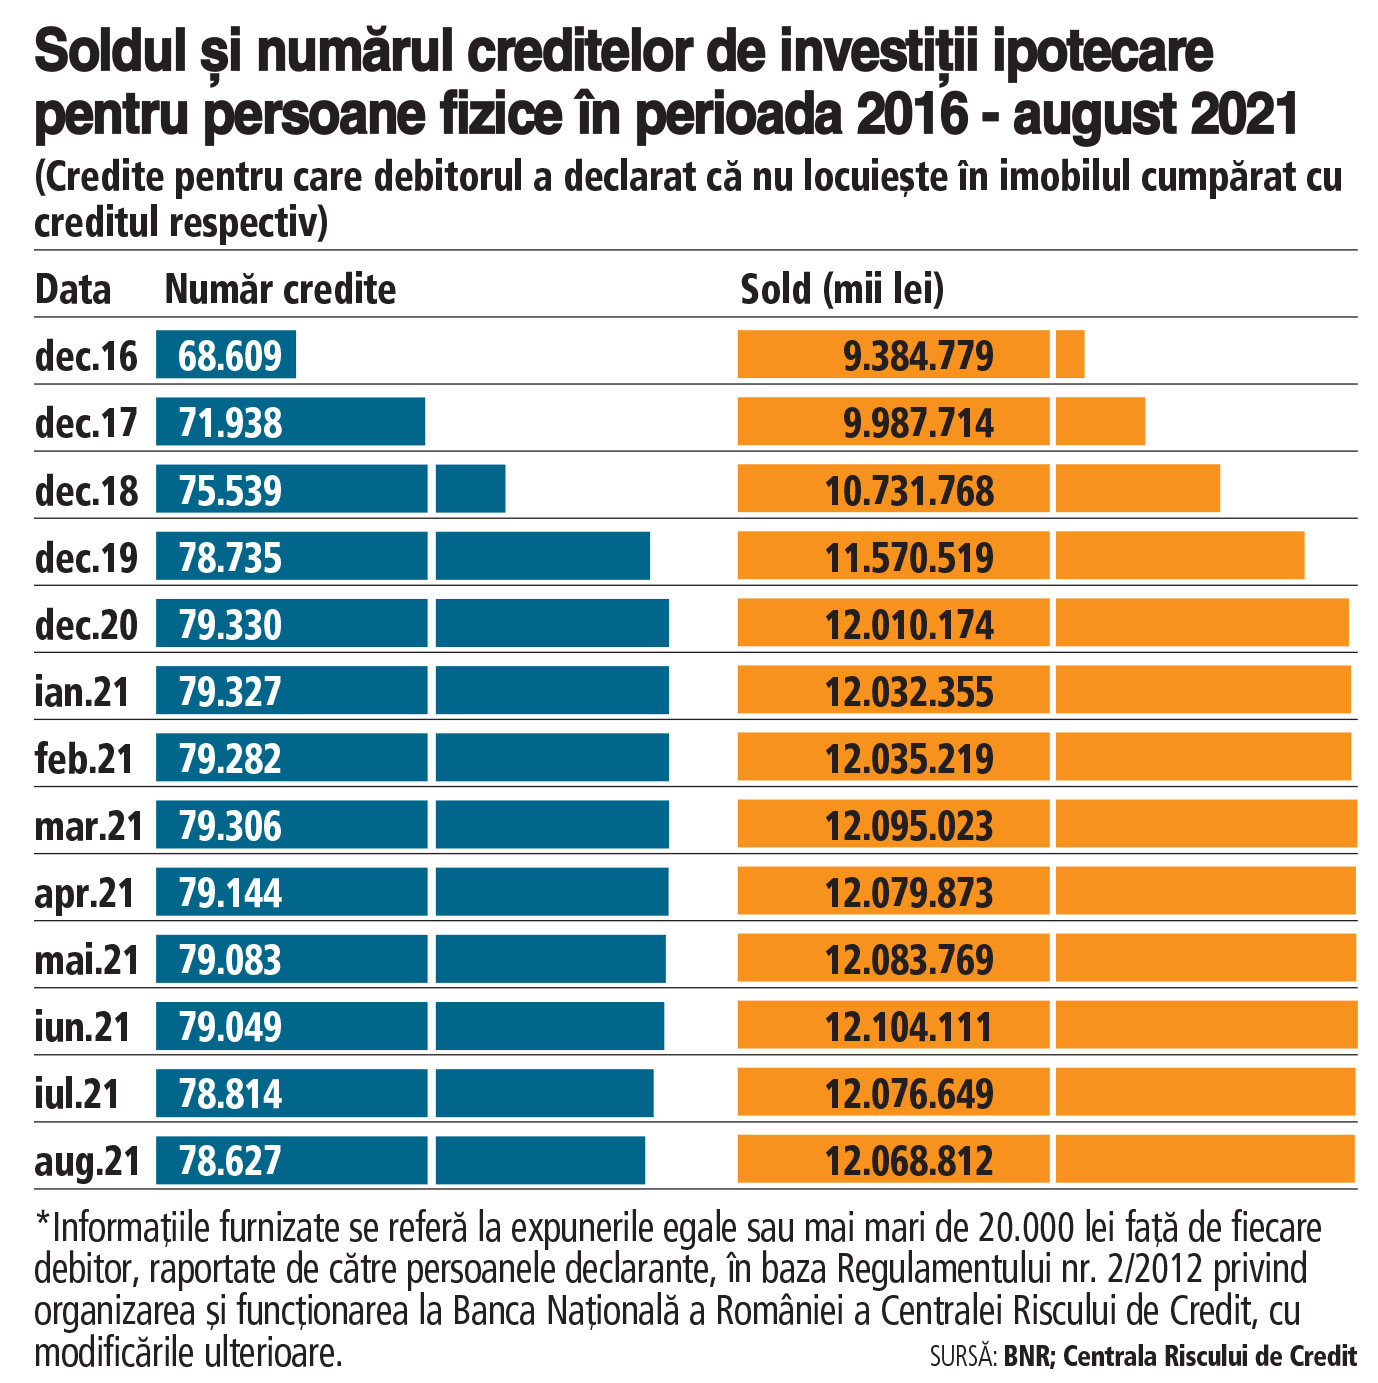 Câţi români au credite imobiliare de investiţii care este valoarea. Un număr de 78.627 de